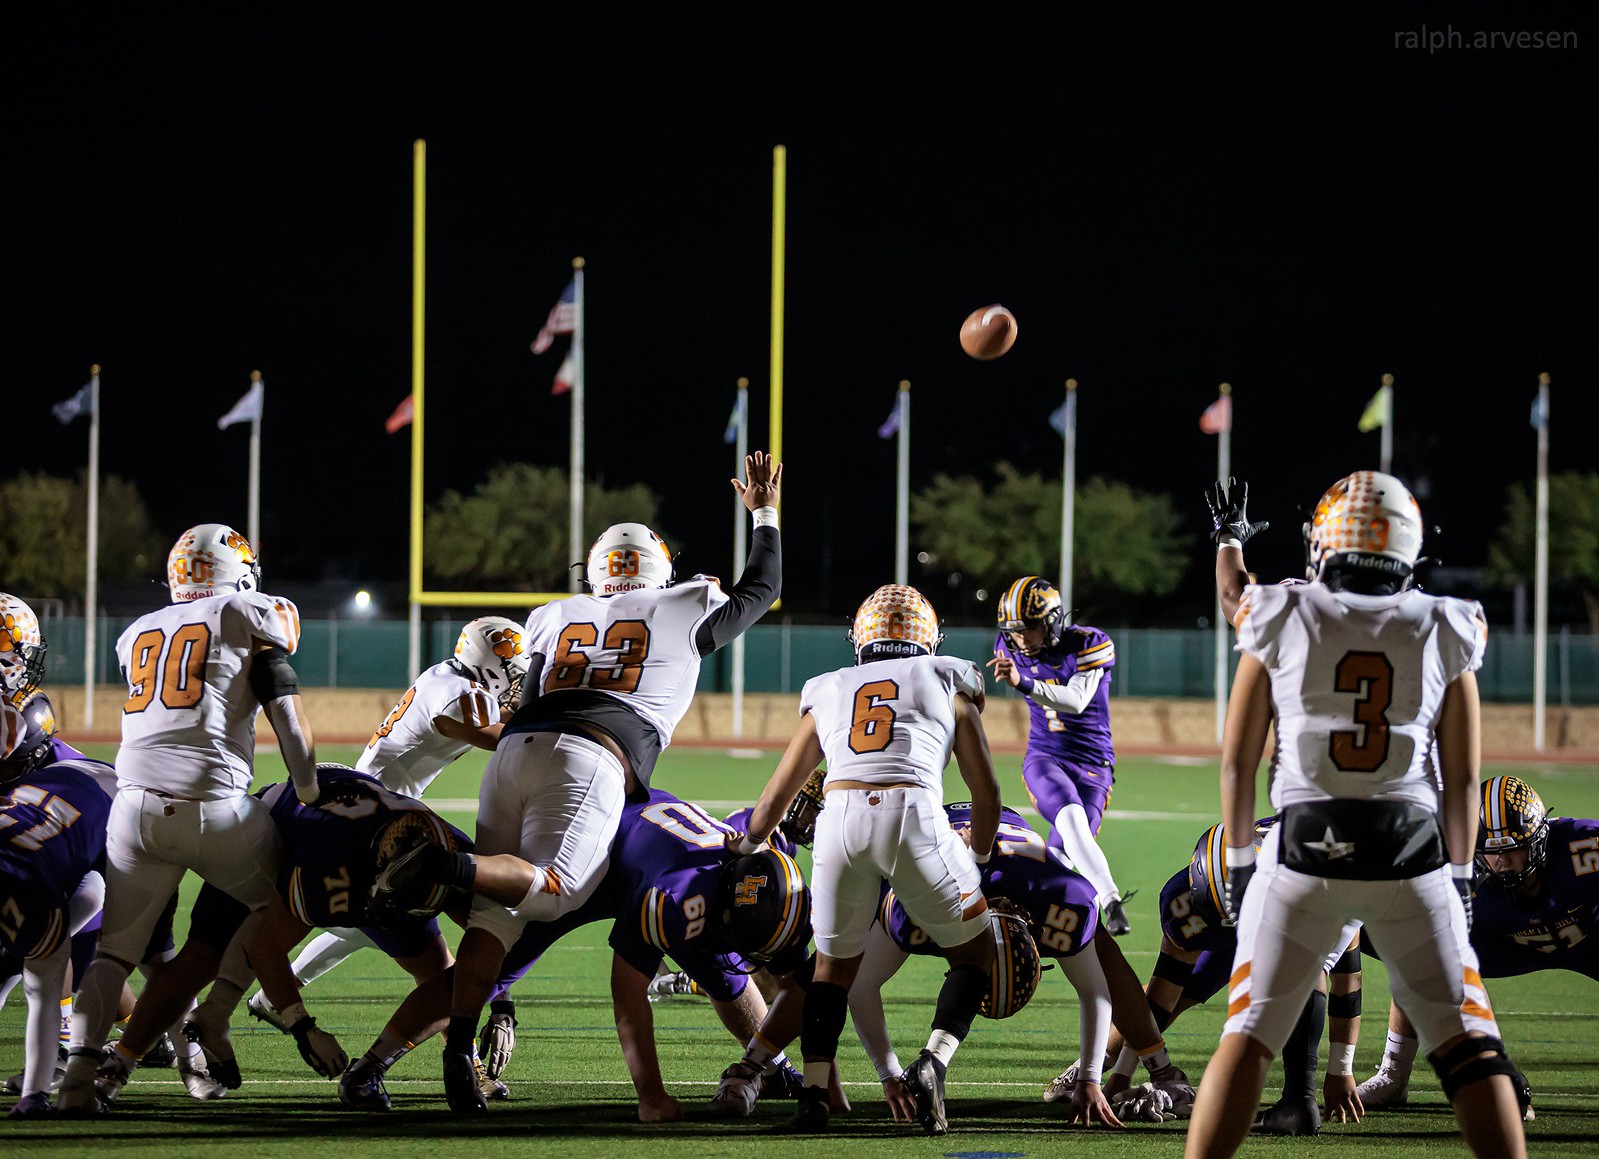 Liberty Hill Football | Texas Review | Ralph Arvesen